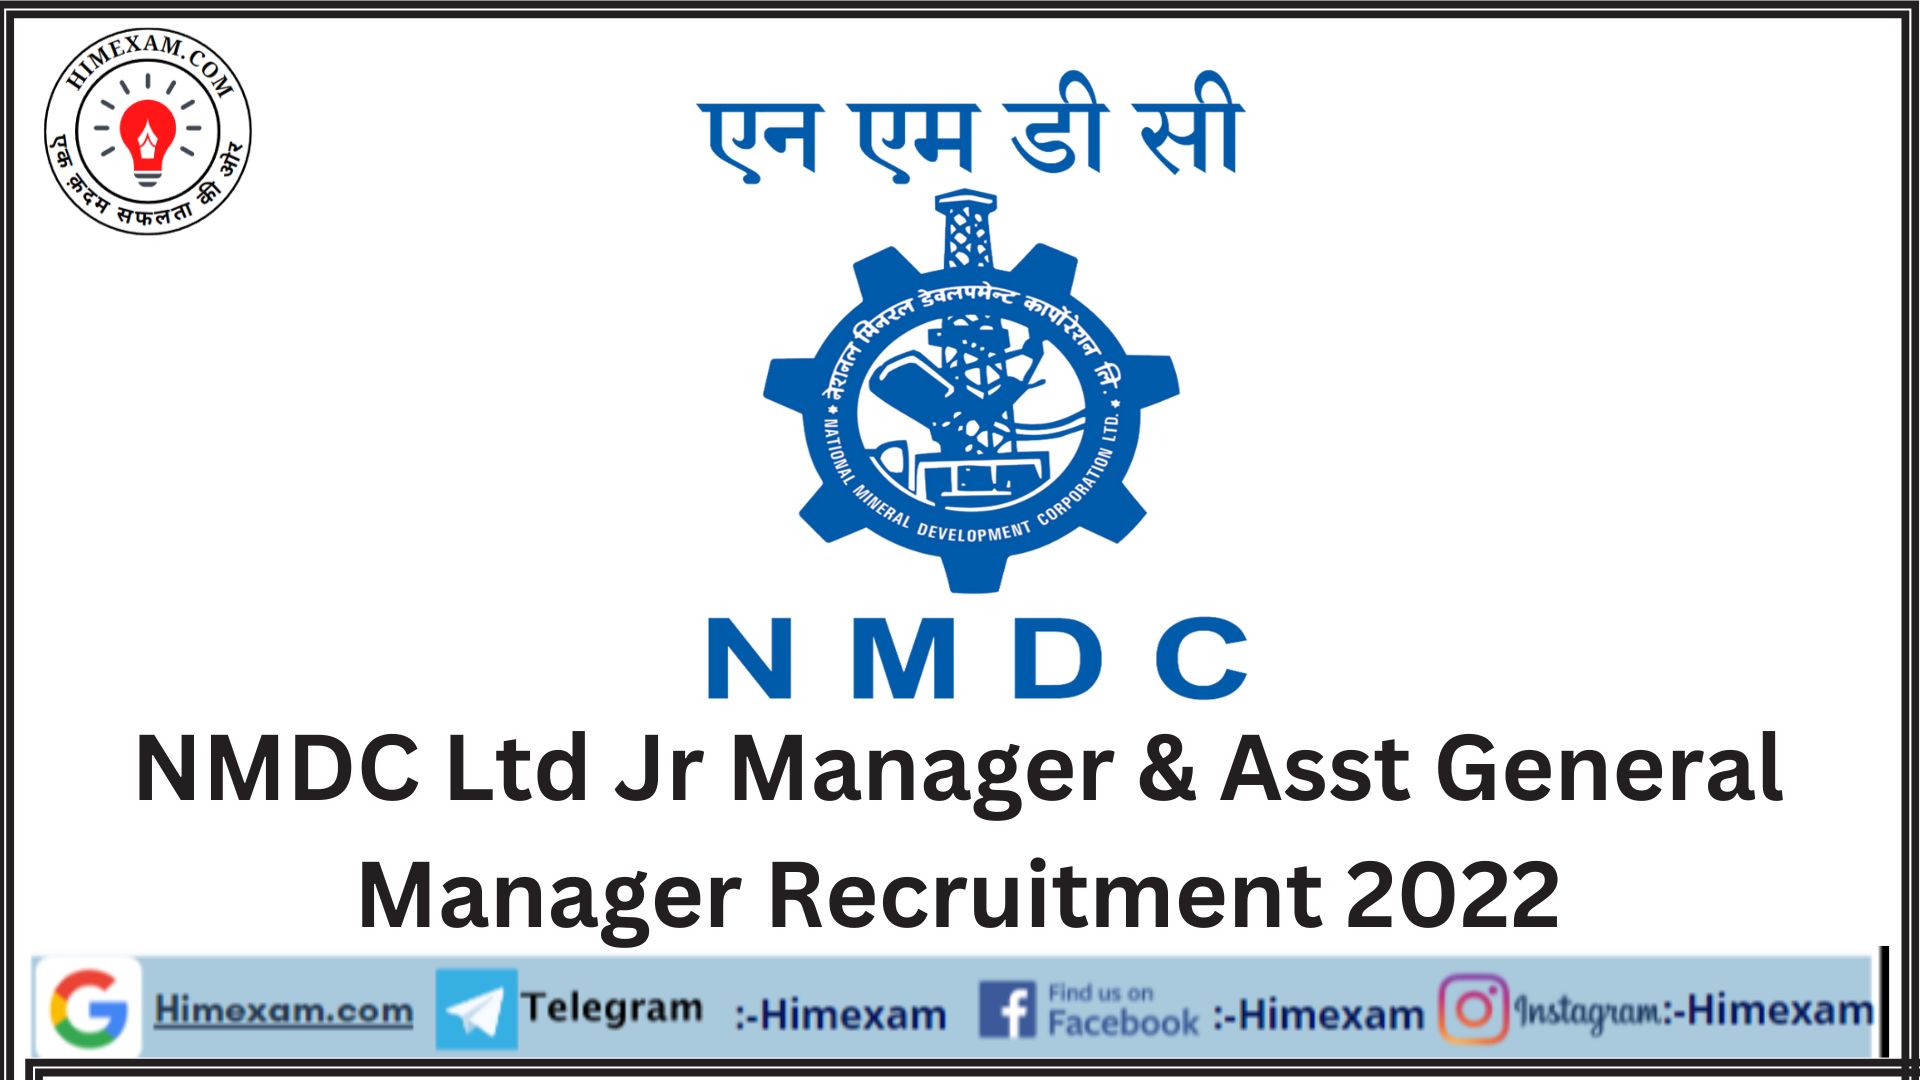 NMDC Ltd Jr Manager & Asst General Manager Recruitment 2022